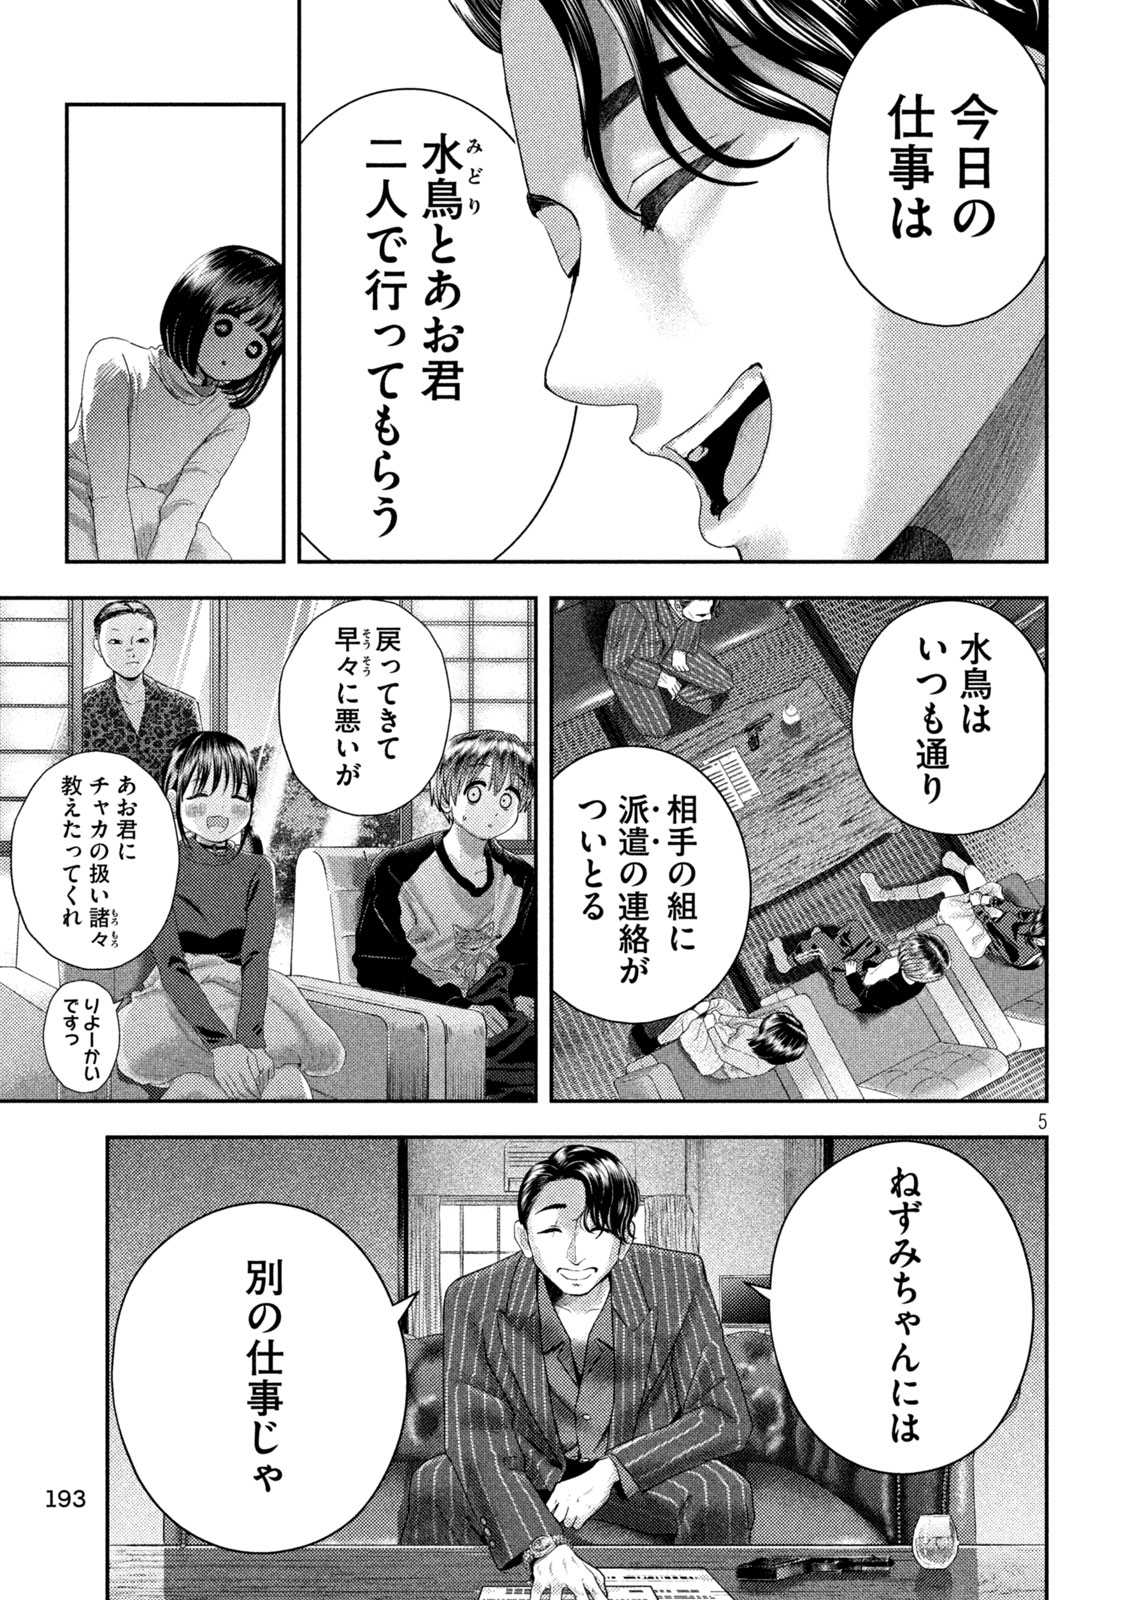 Nezumi no Koi - Chapter 31 - Page 5